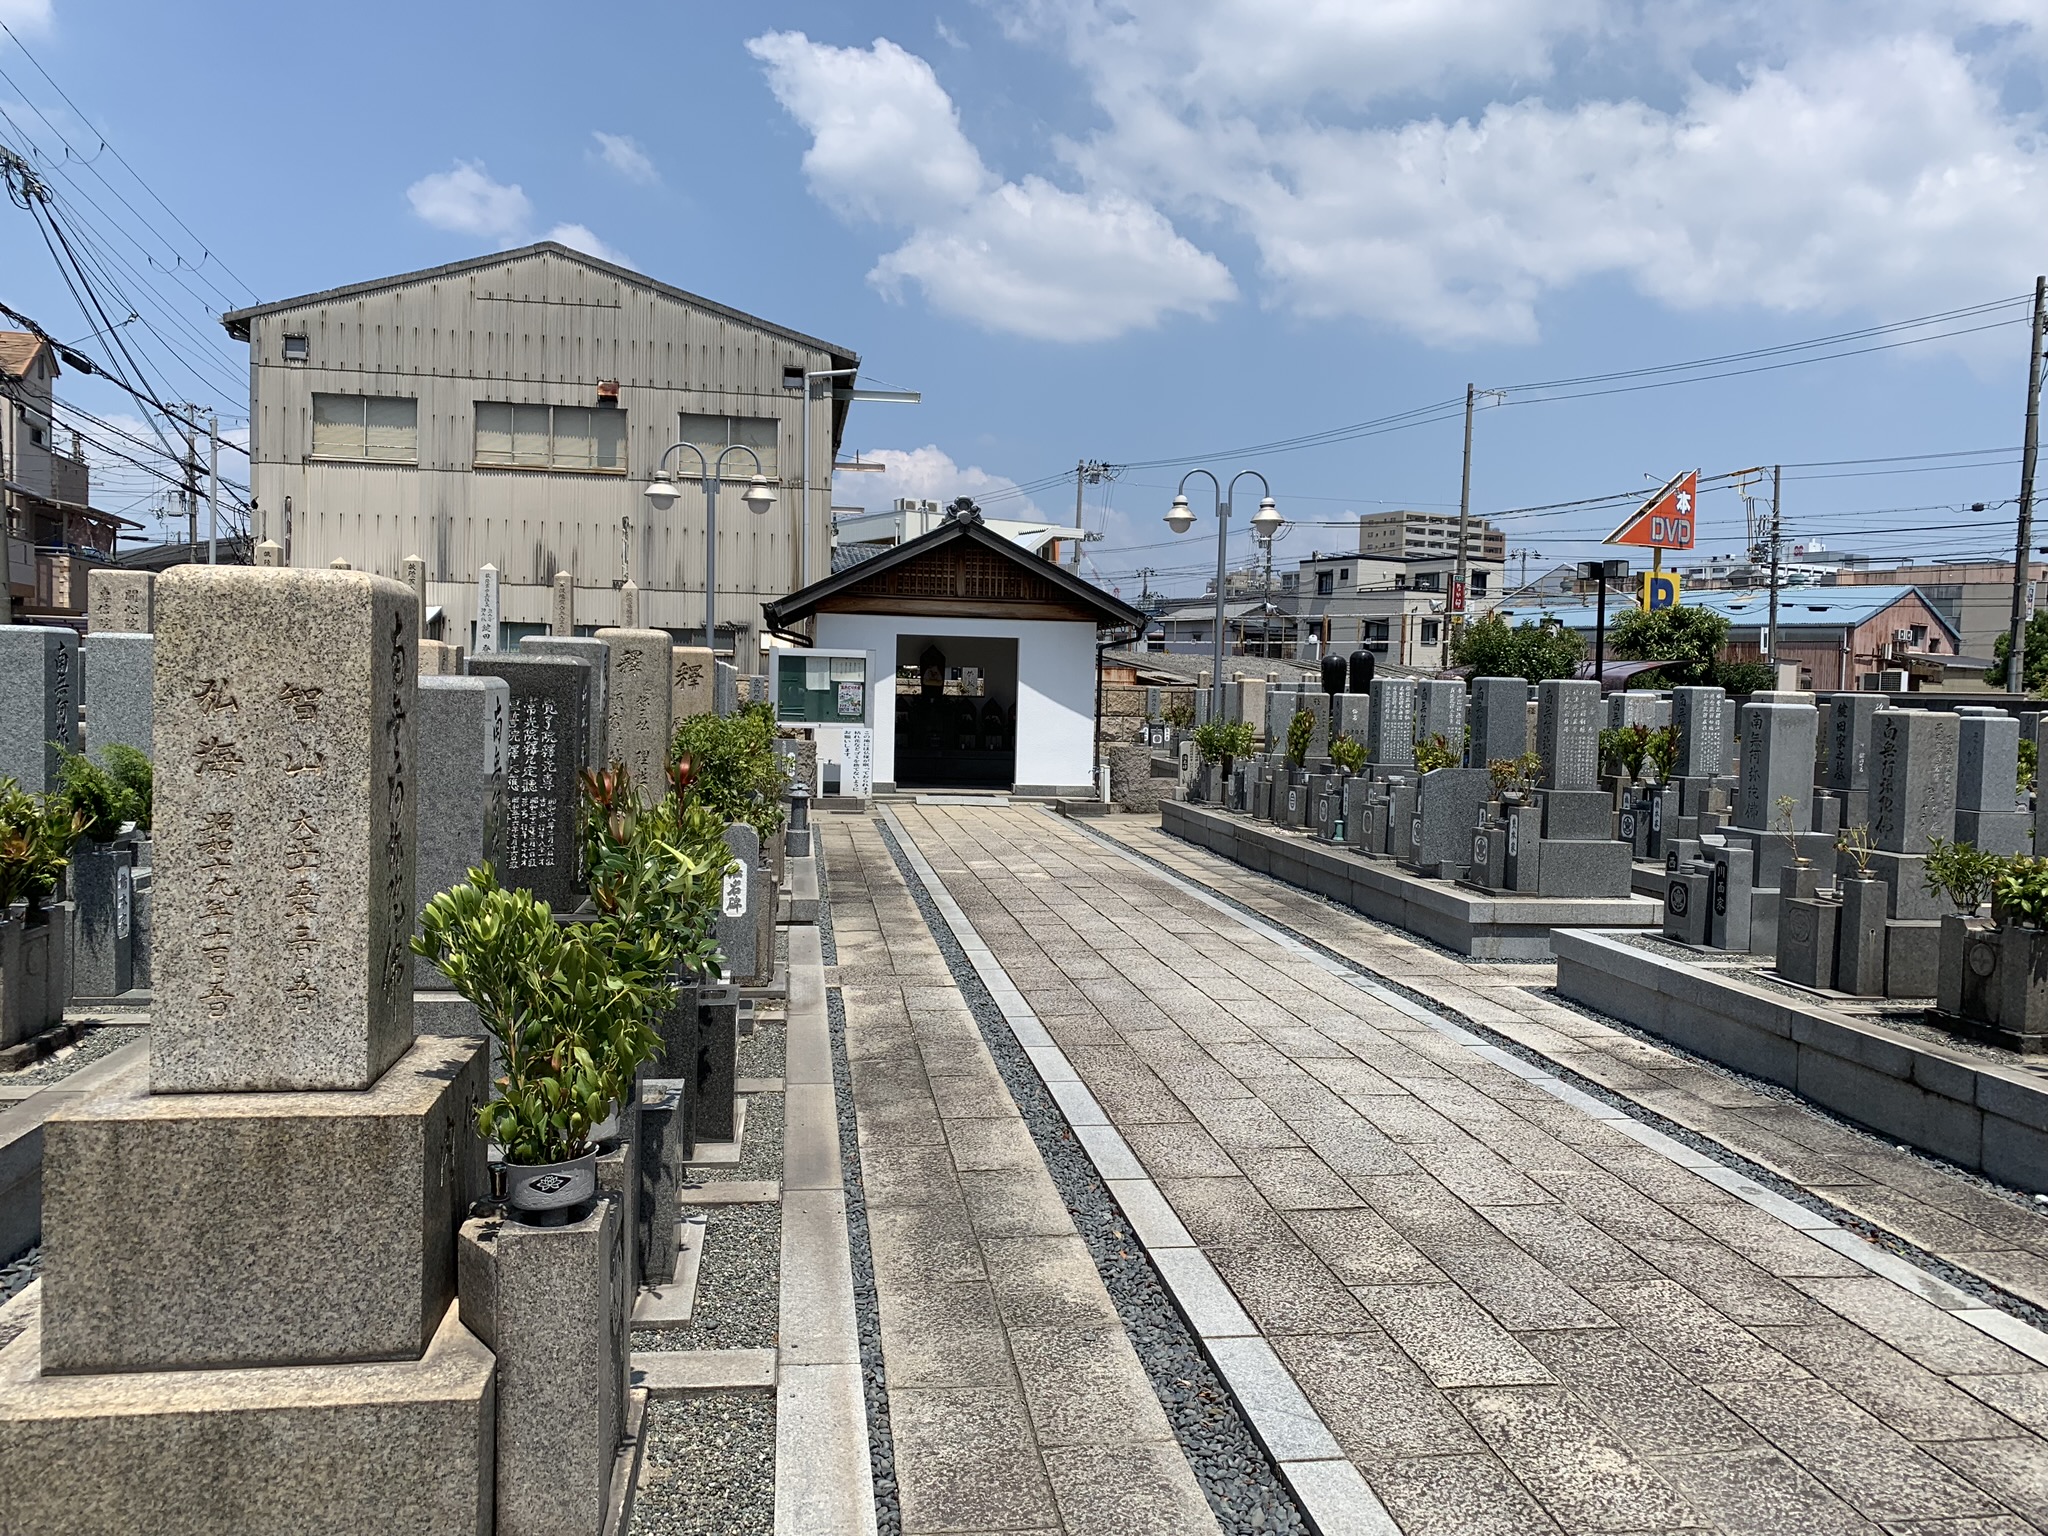  上ノ島墓地の聖地